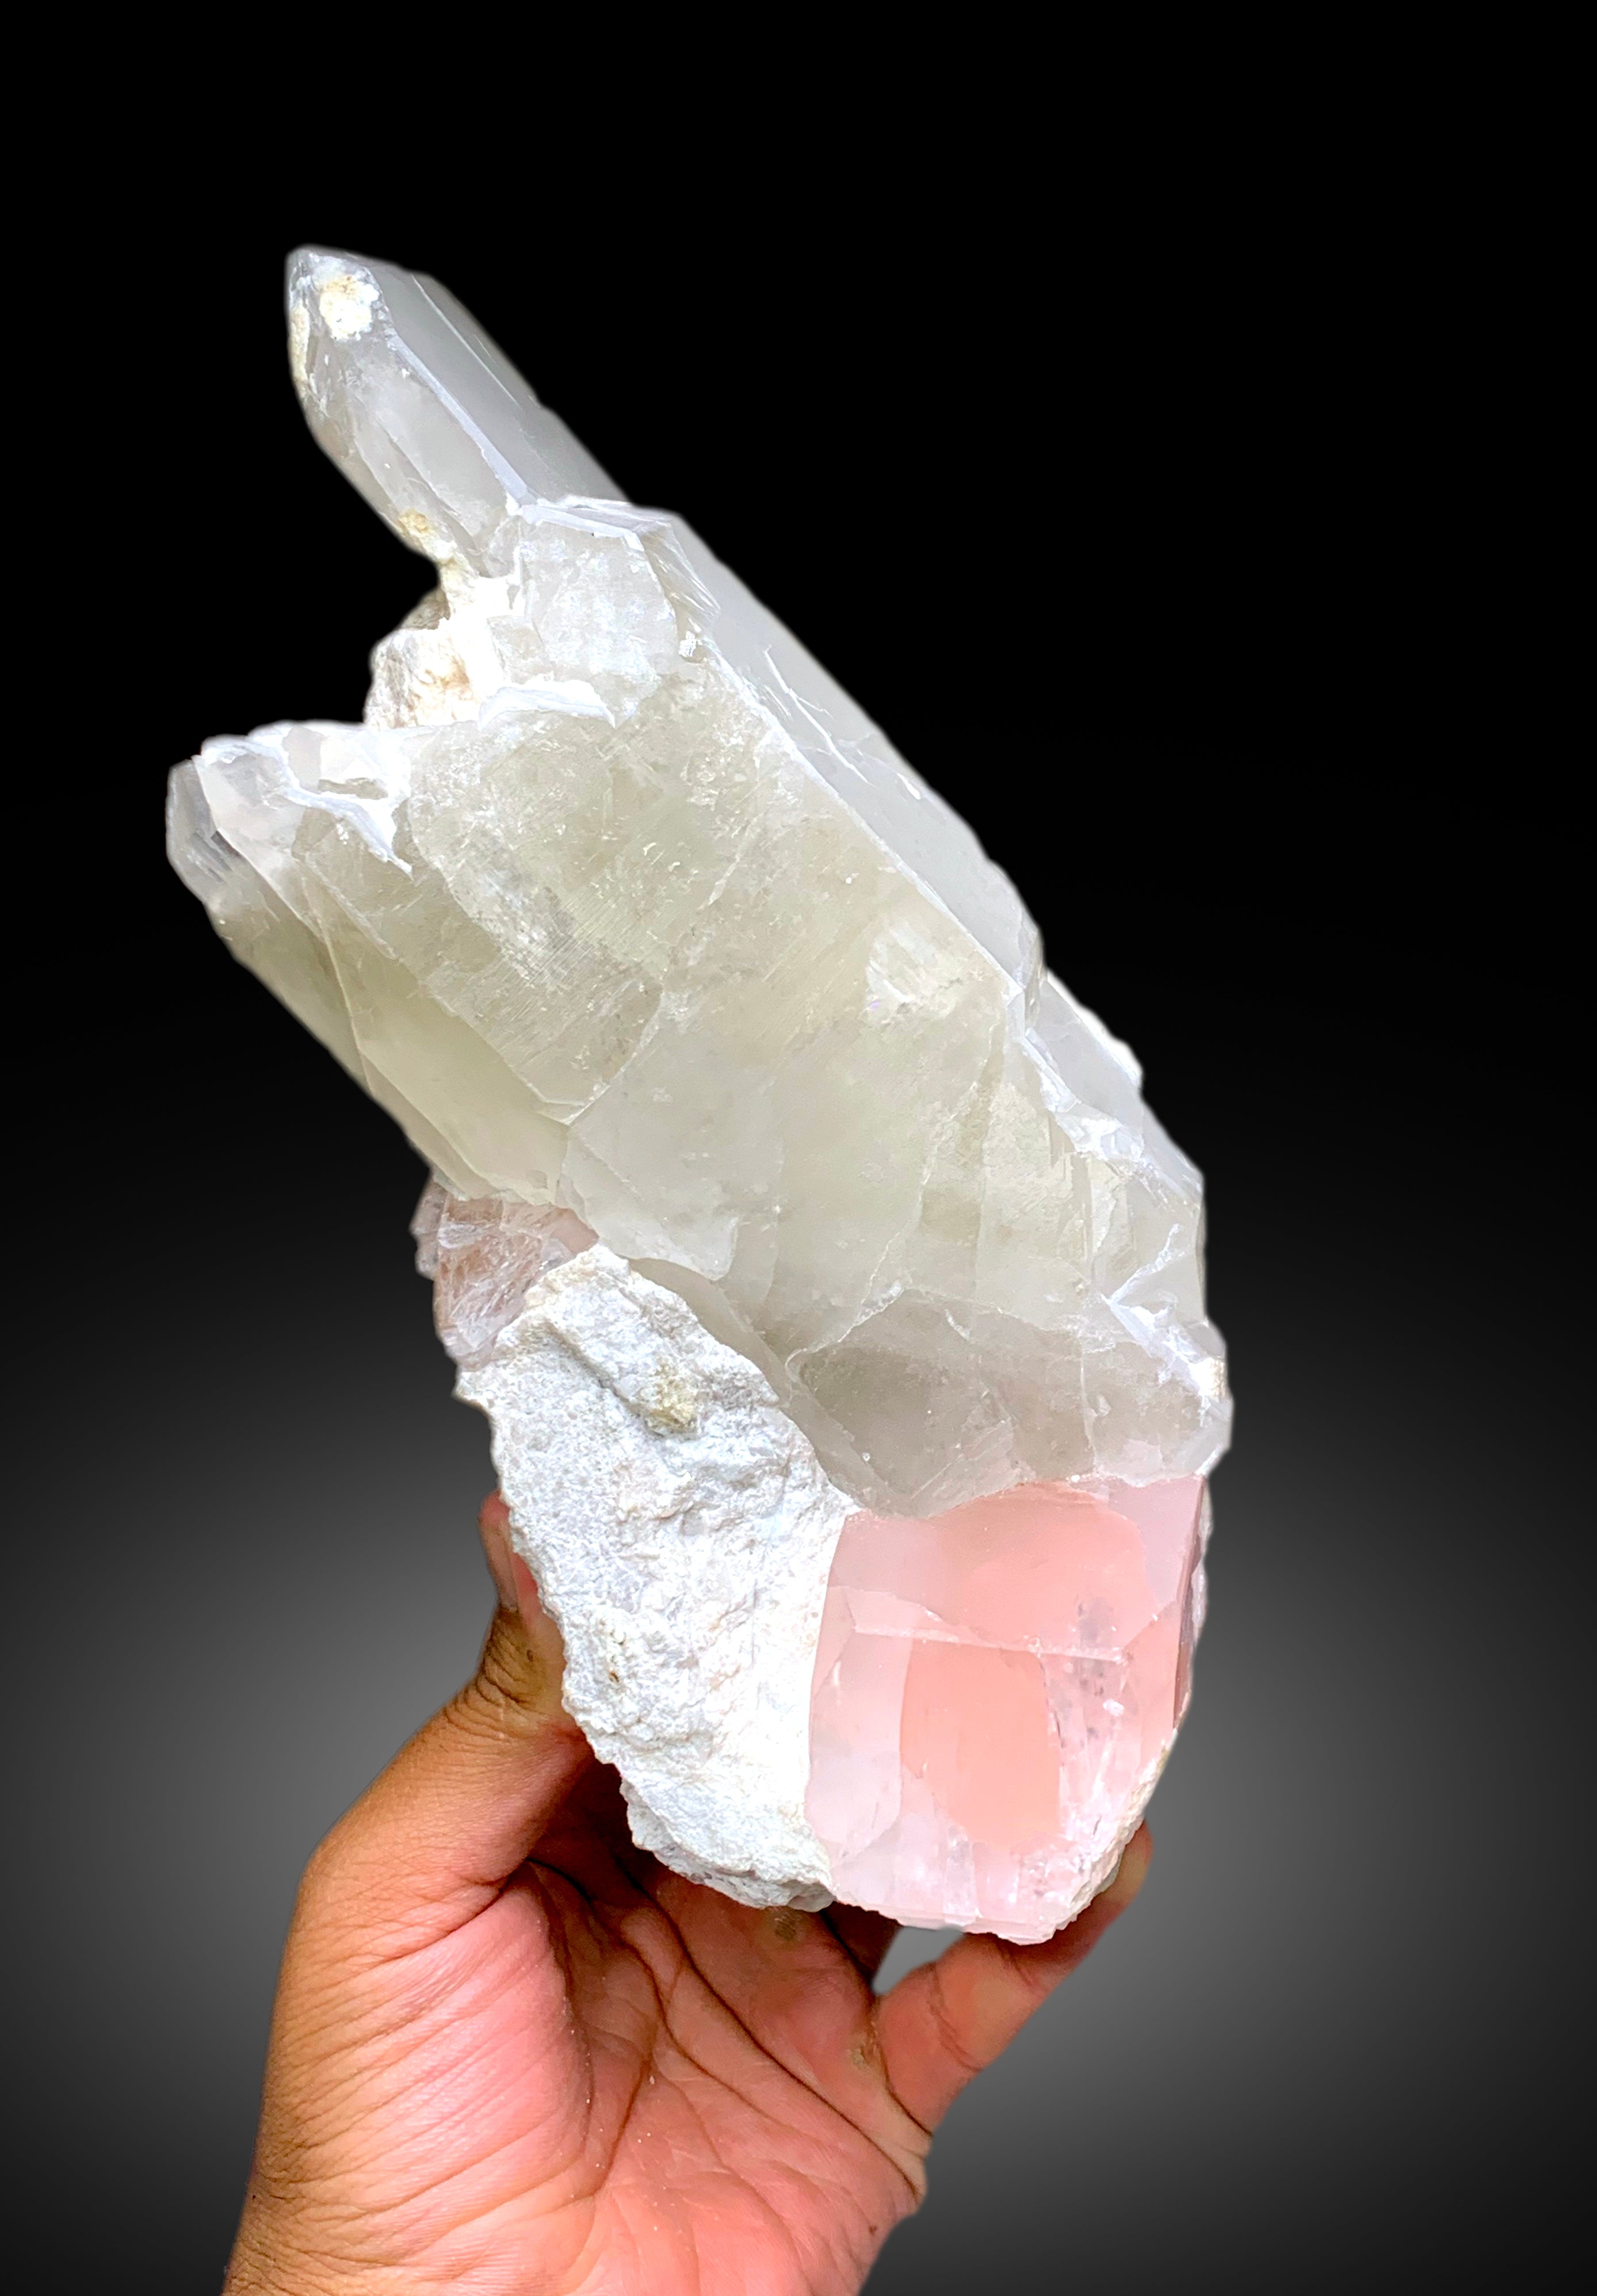 Natural Pink Morganite Crystal on Quartz, Morganite Specimen, Raw Mineral, Morganite from Dara-i-Pech Afghanistan - 2365 gram